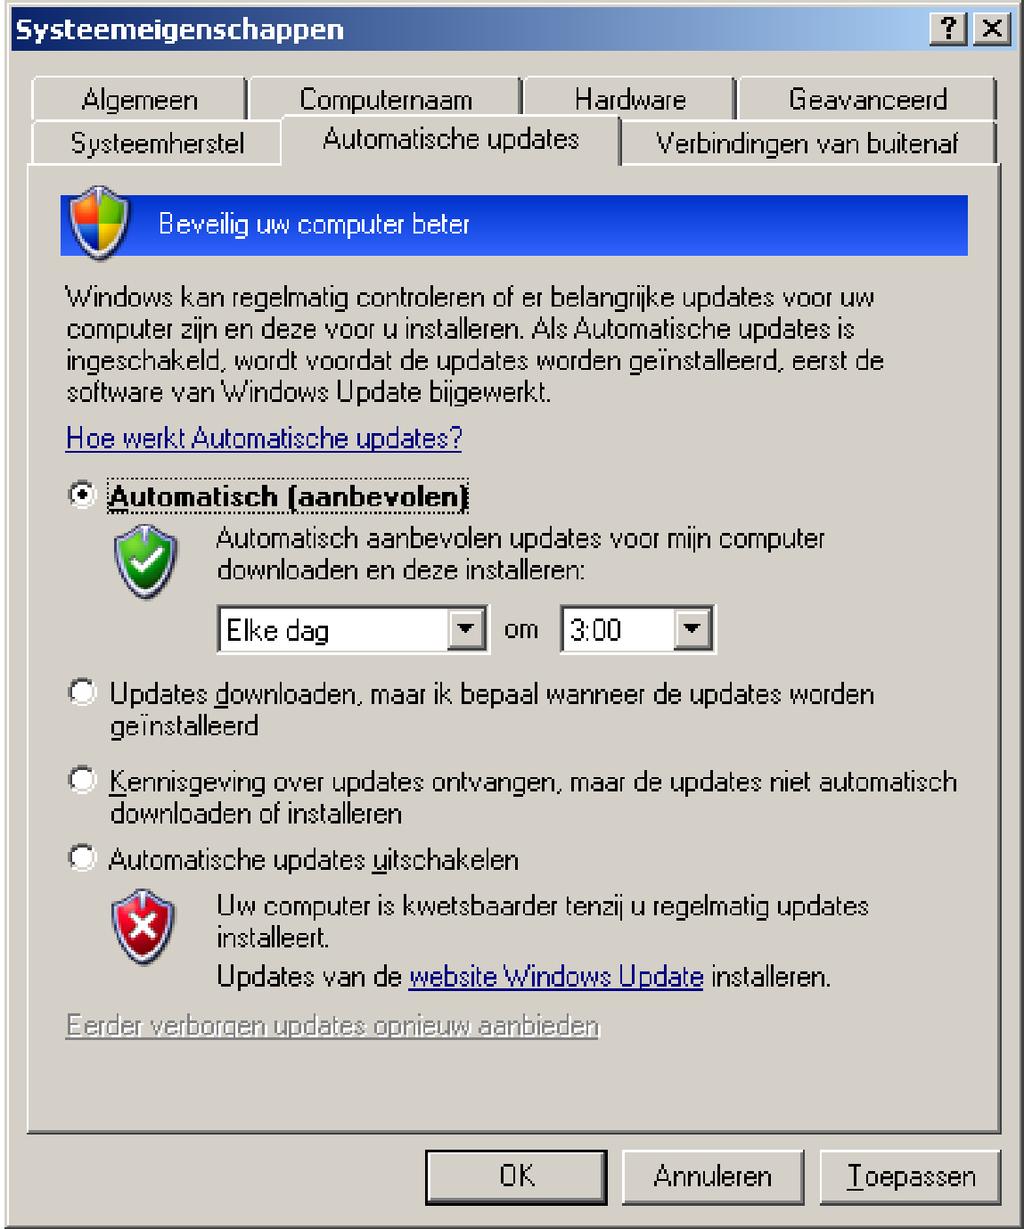 Windows automatische Update uitschakelen: Open het [Configuratiescherm] en selecteer [Systeem].